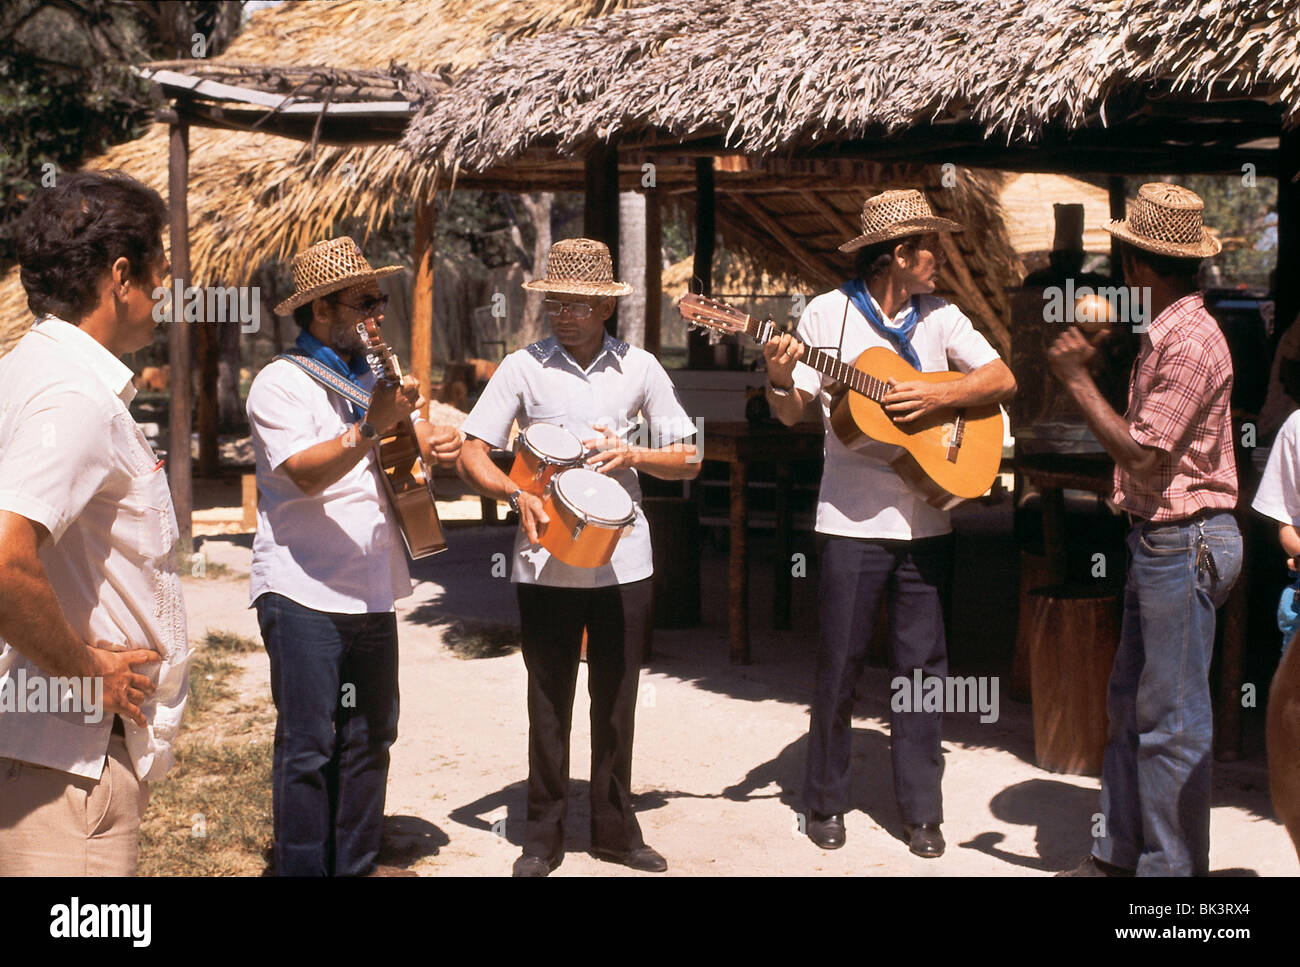 Un quartetto maschile di musicisti che suonano chitarre acustiche, tamburi e maracas per l'intrattenimento turistico a Cuba Foto Stock